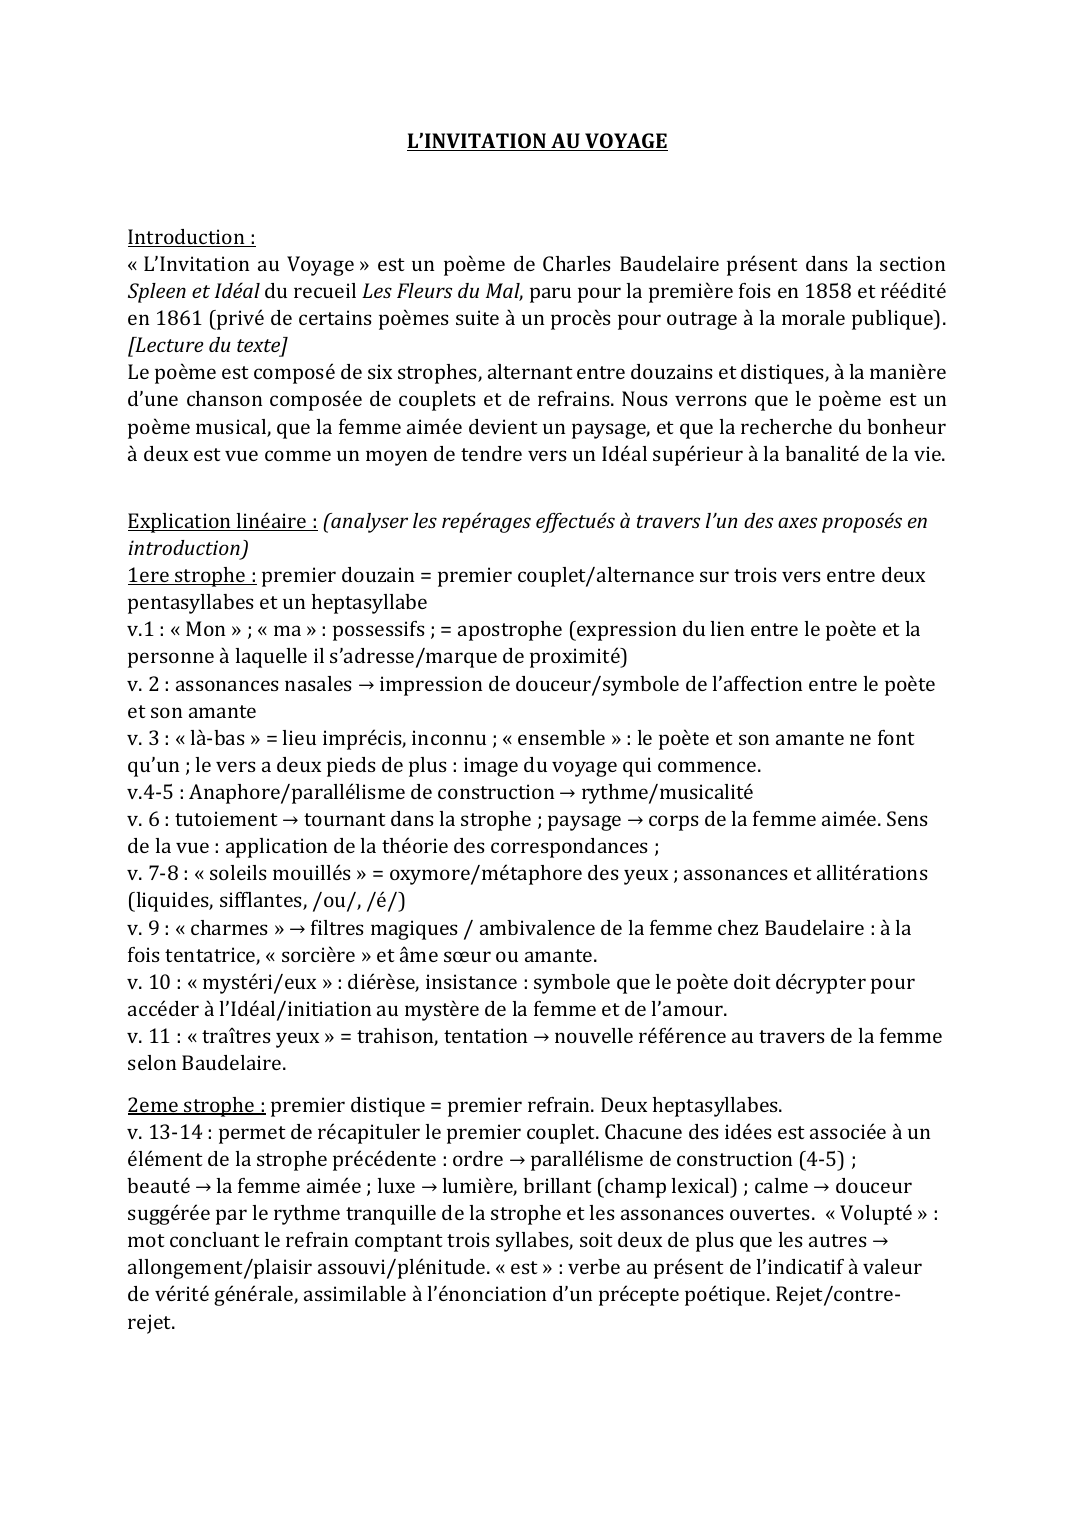 Prévisualisation du document L'invitation au voyage de Baudelaire- explication linéaire